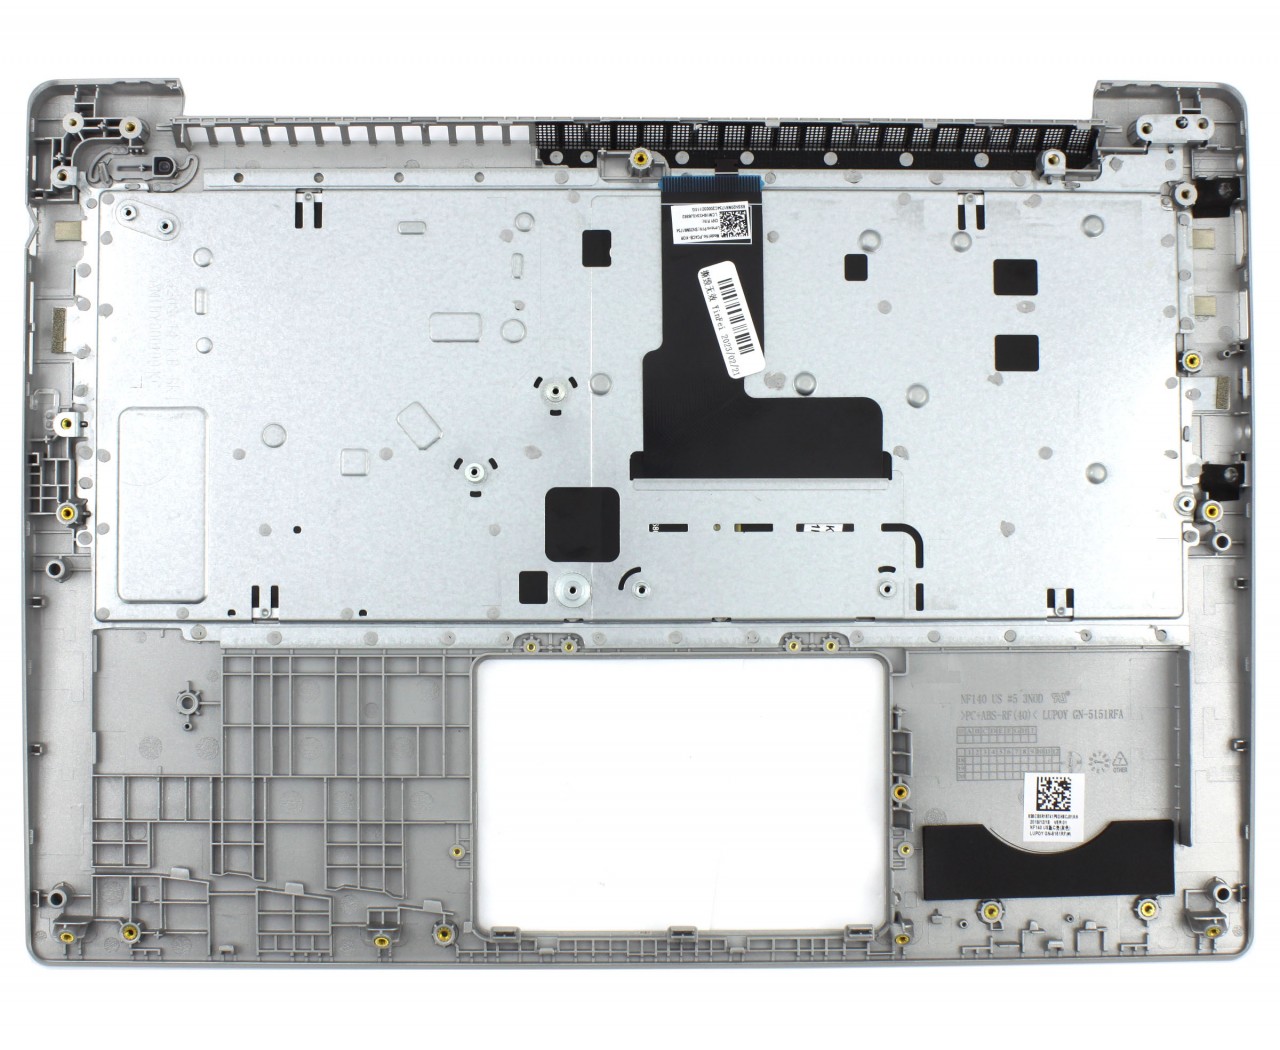 Tastatura Lenovo 26501204200740 Gri cu Palmrest Argintiu iluminata backlit image5